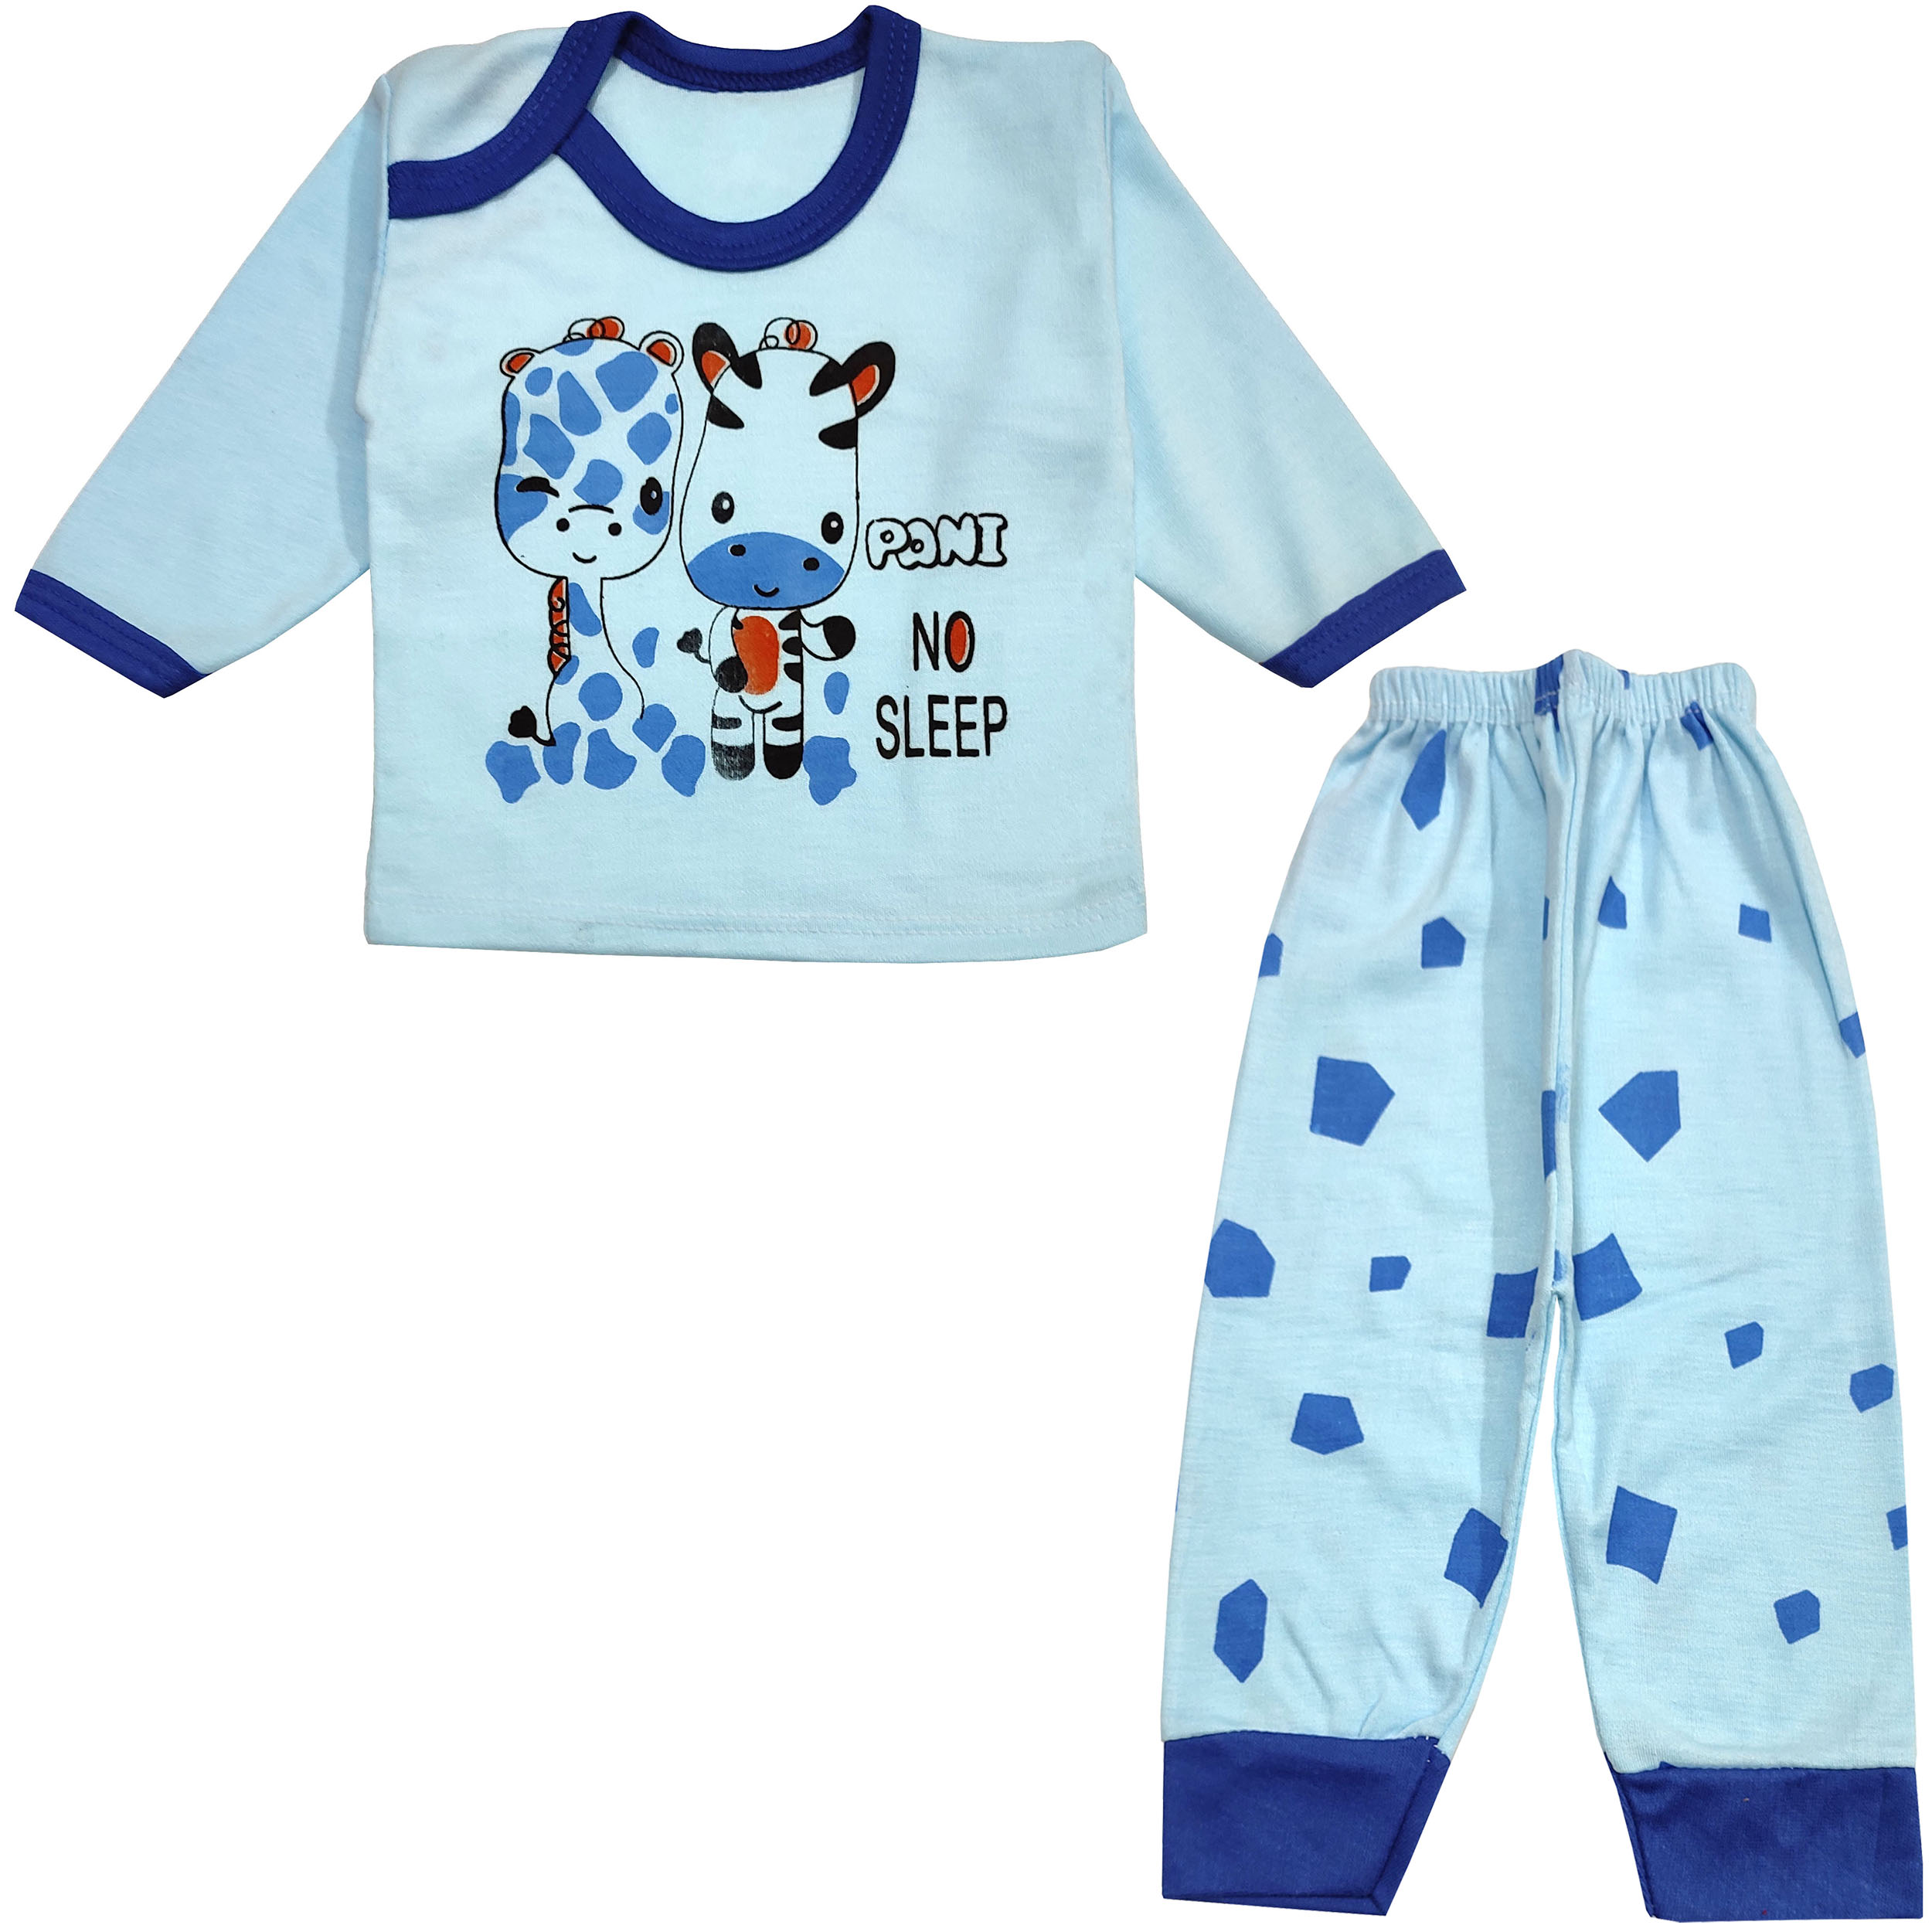 ست تی شرت و شلوار نوزادی مدل گورخر کد 3728 رنگ آبی